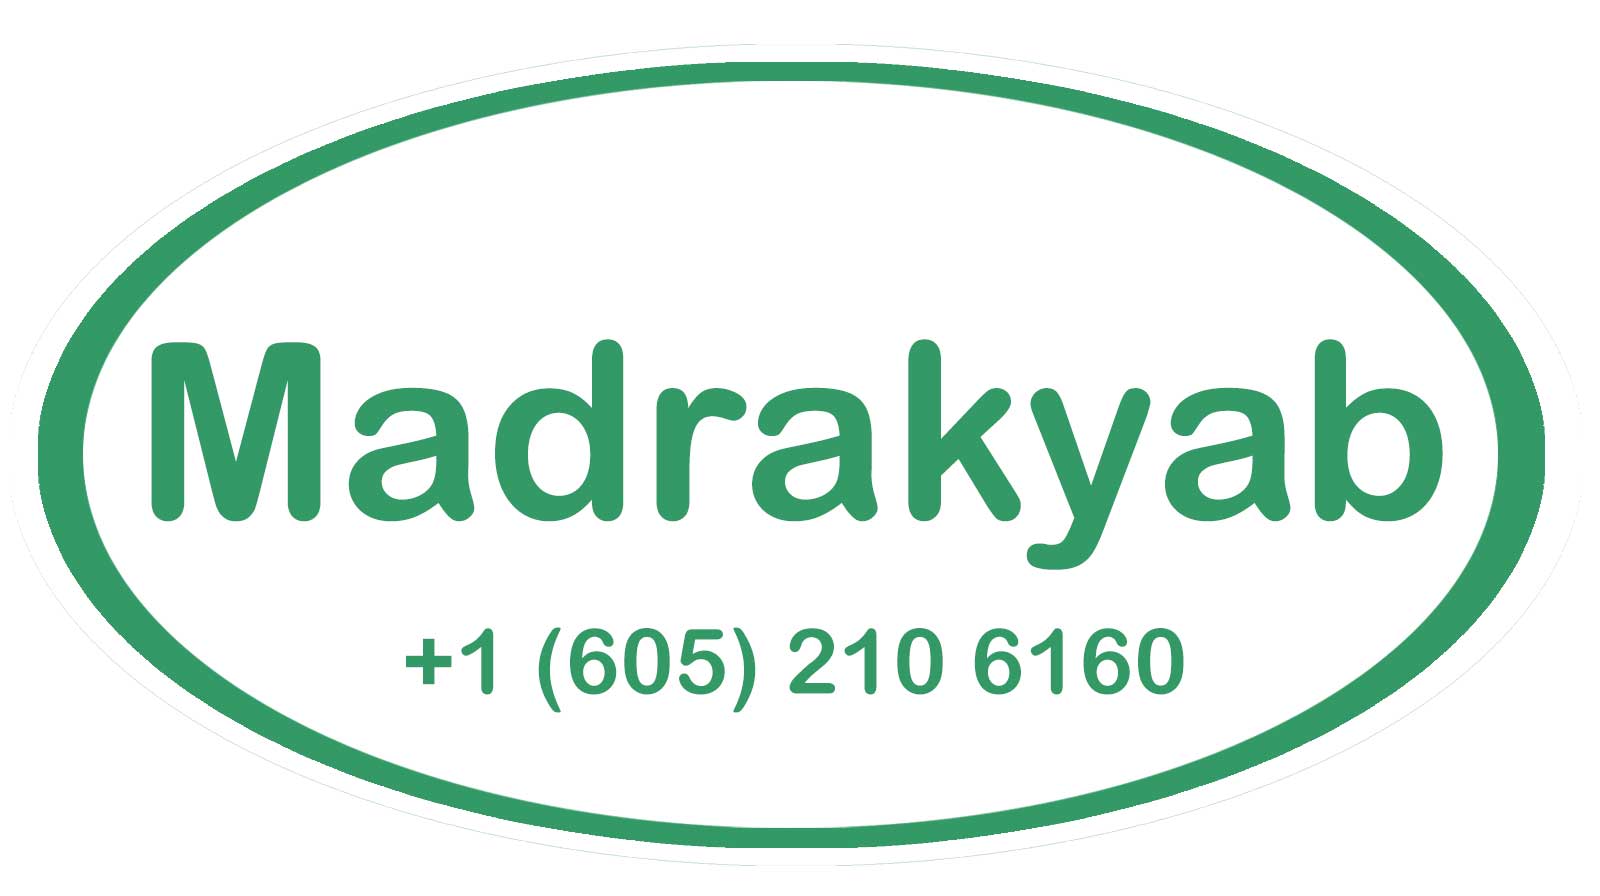 madrakyab logo